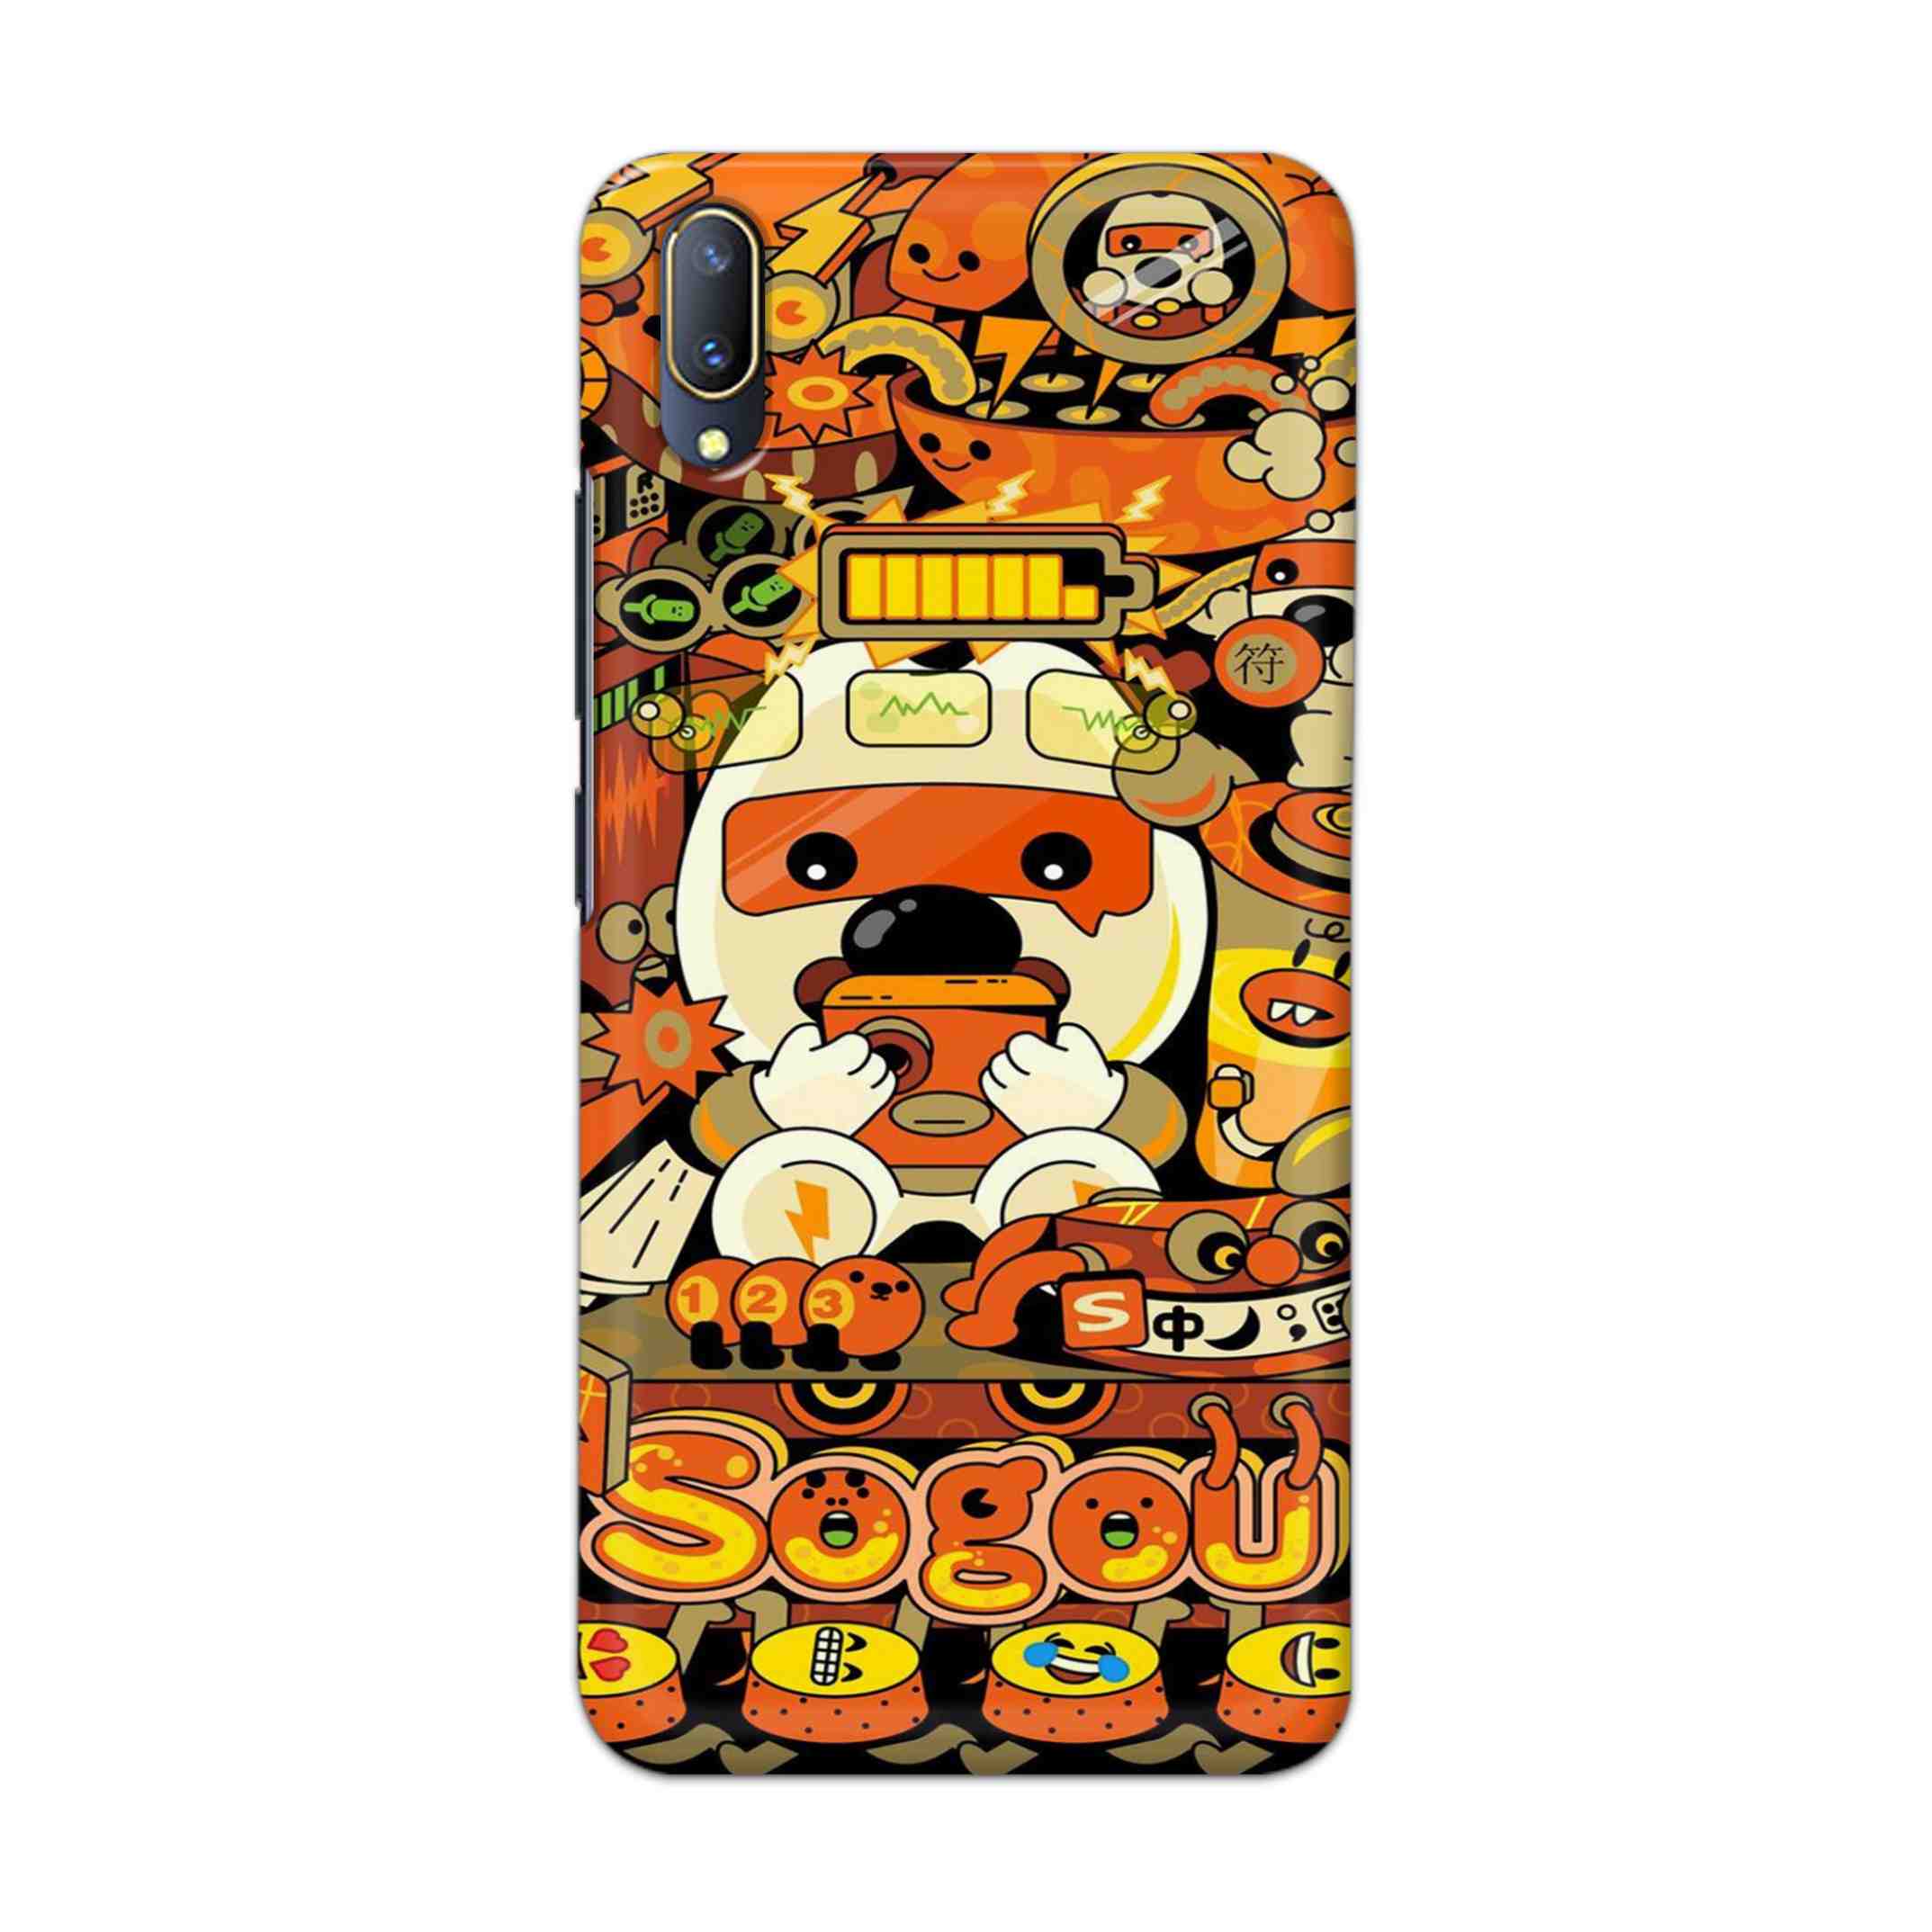 Buy Sogou Hard Back Mobile Phone Case Cover For V11 PRO Online